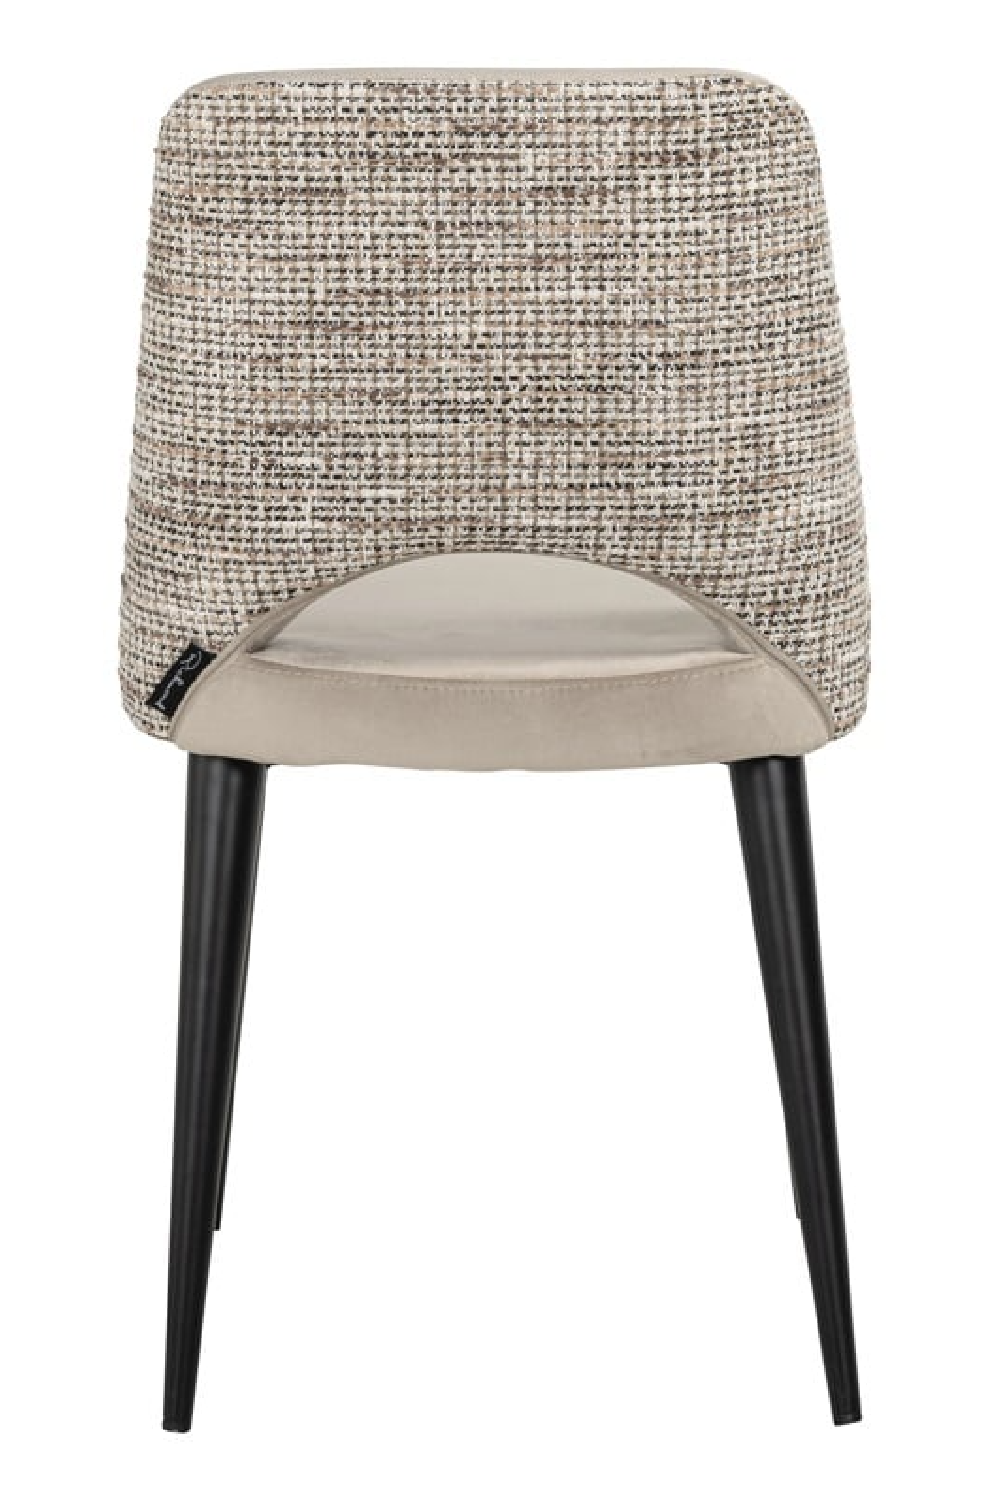 Khaki Cut-Out Dining Chair | OROA Tabitha | Oroa.com